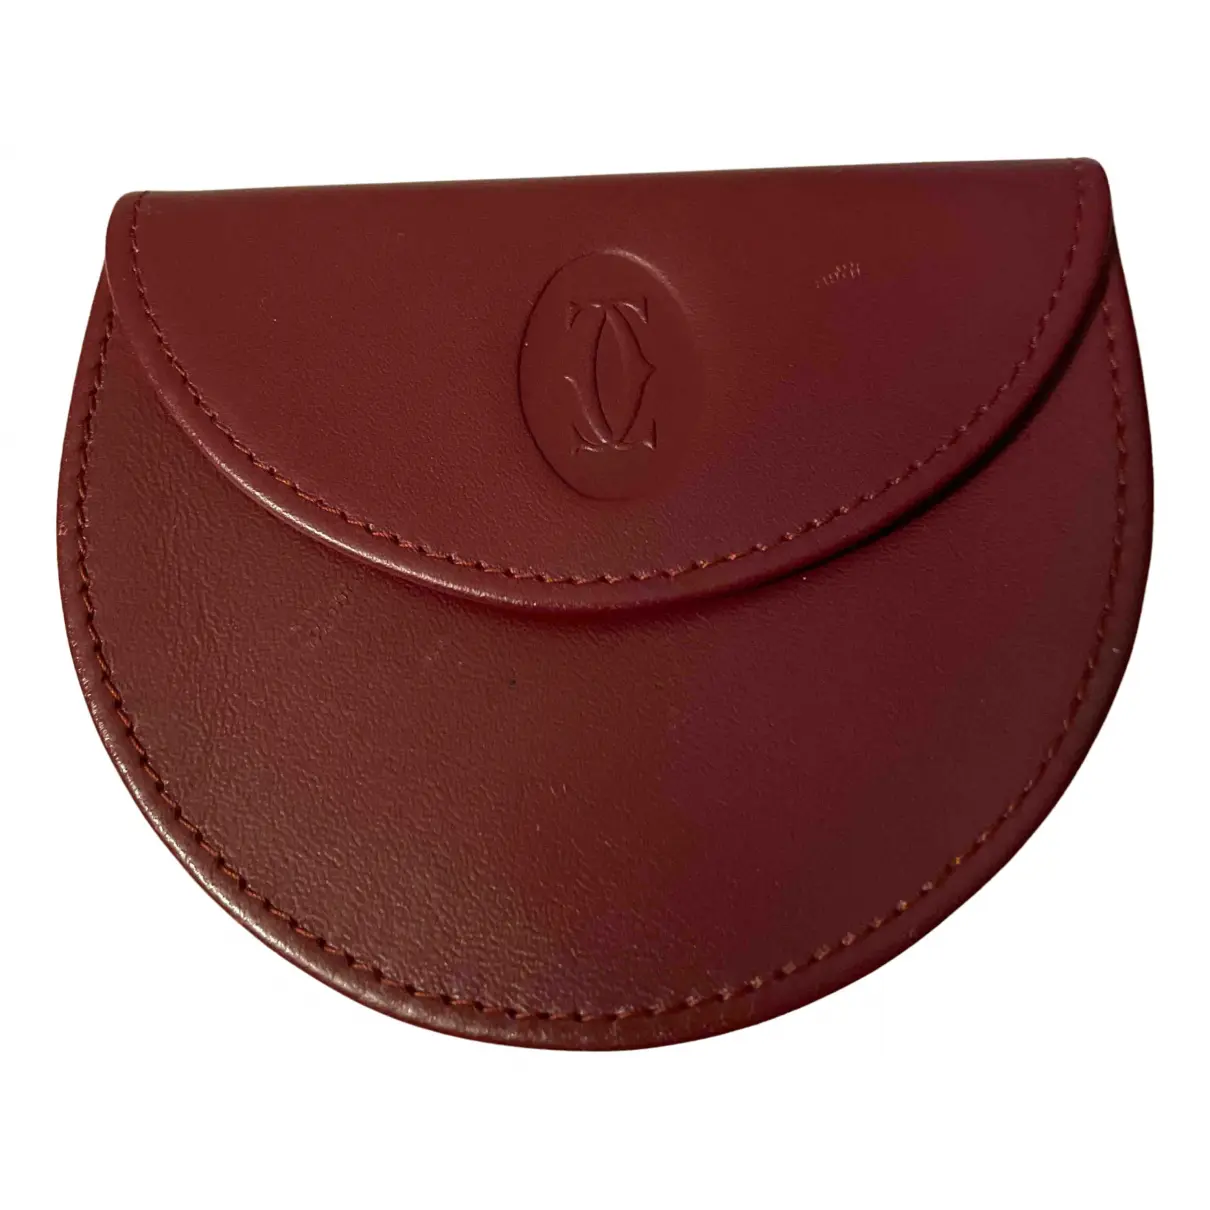 Leather purse Cartier